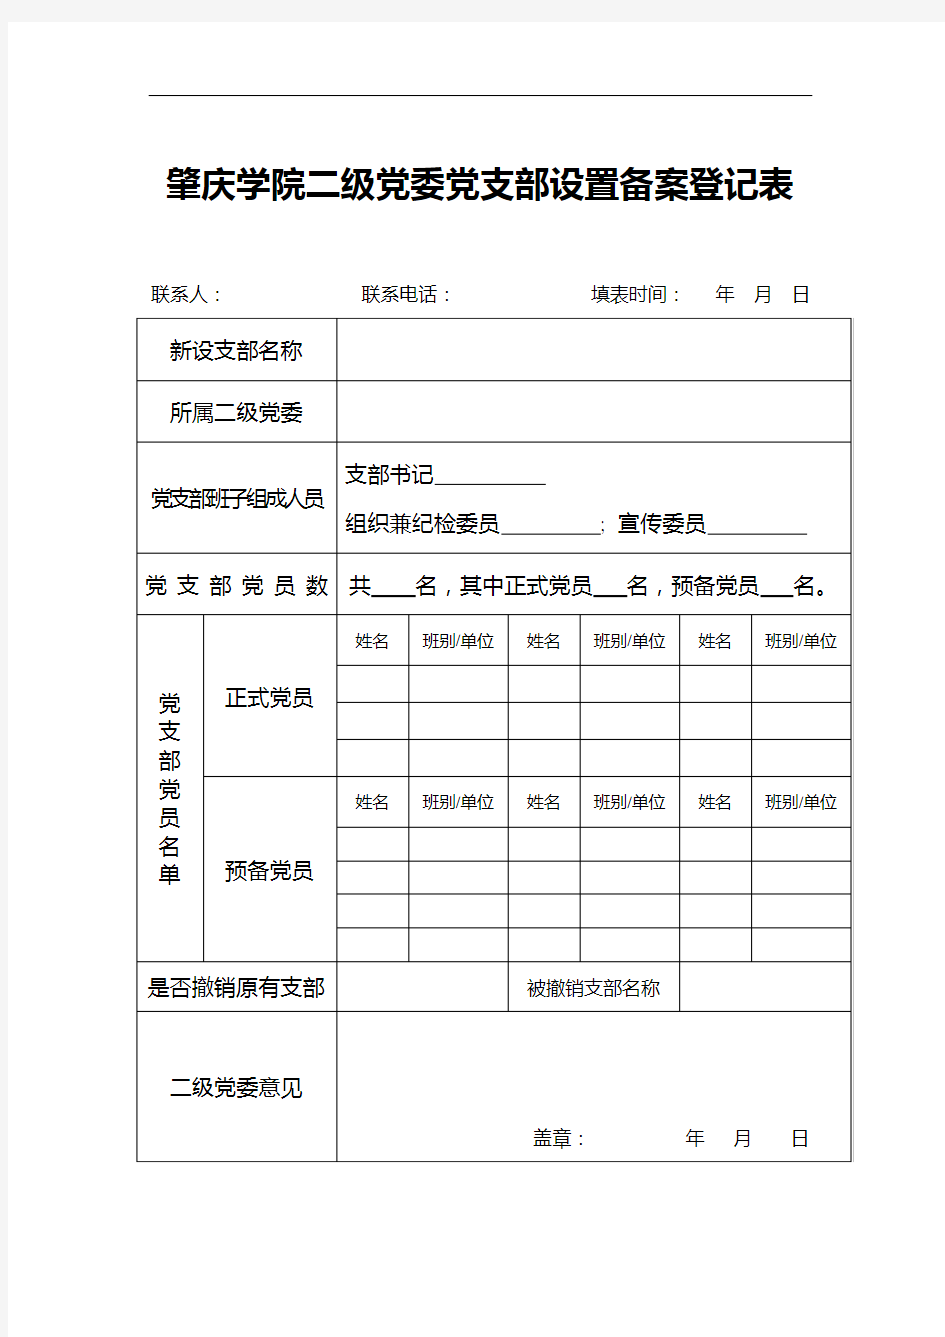 二级党委(党总支)党支部设置备案登记表